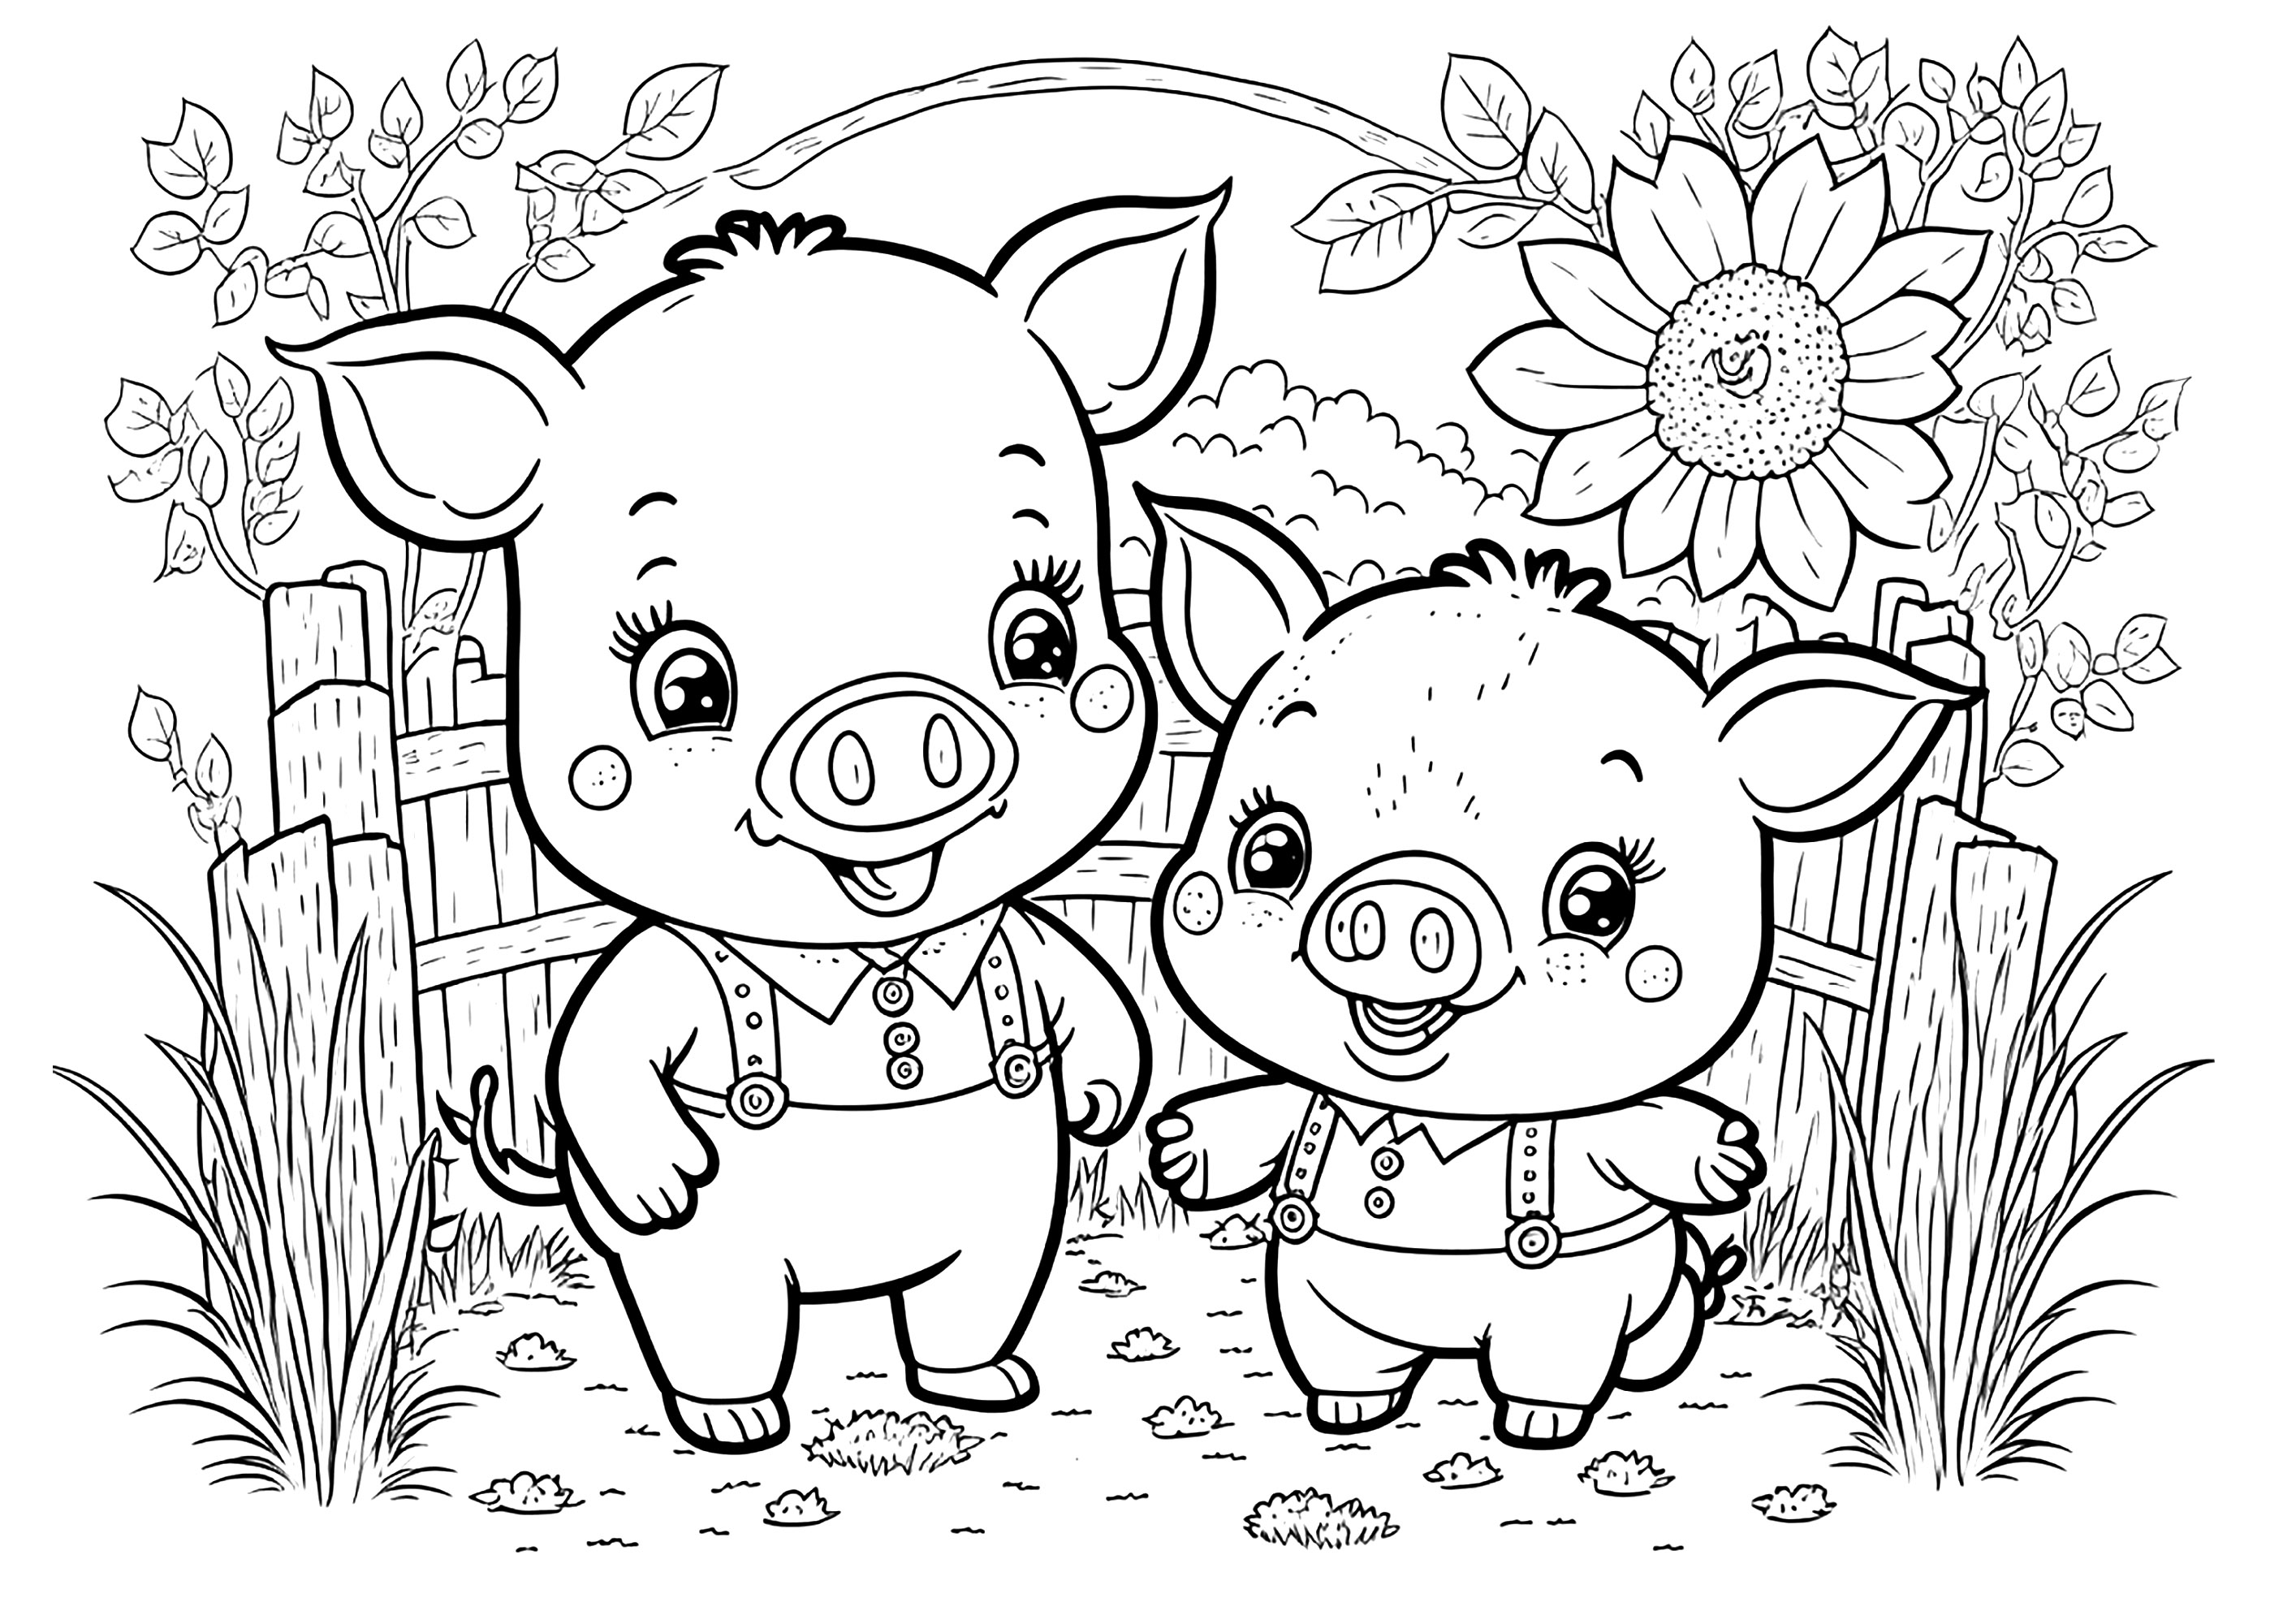 Deux cochons sympathiques, très amis, à colorier